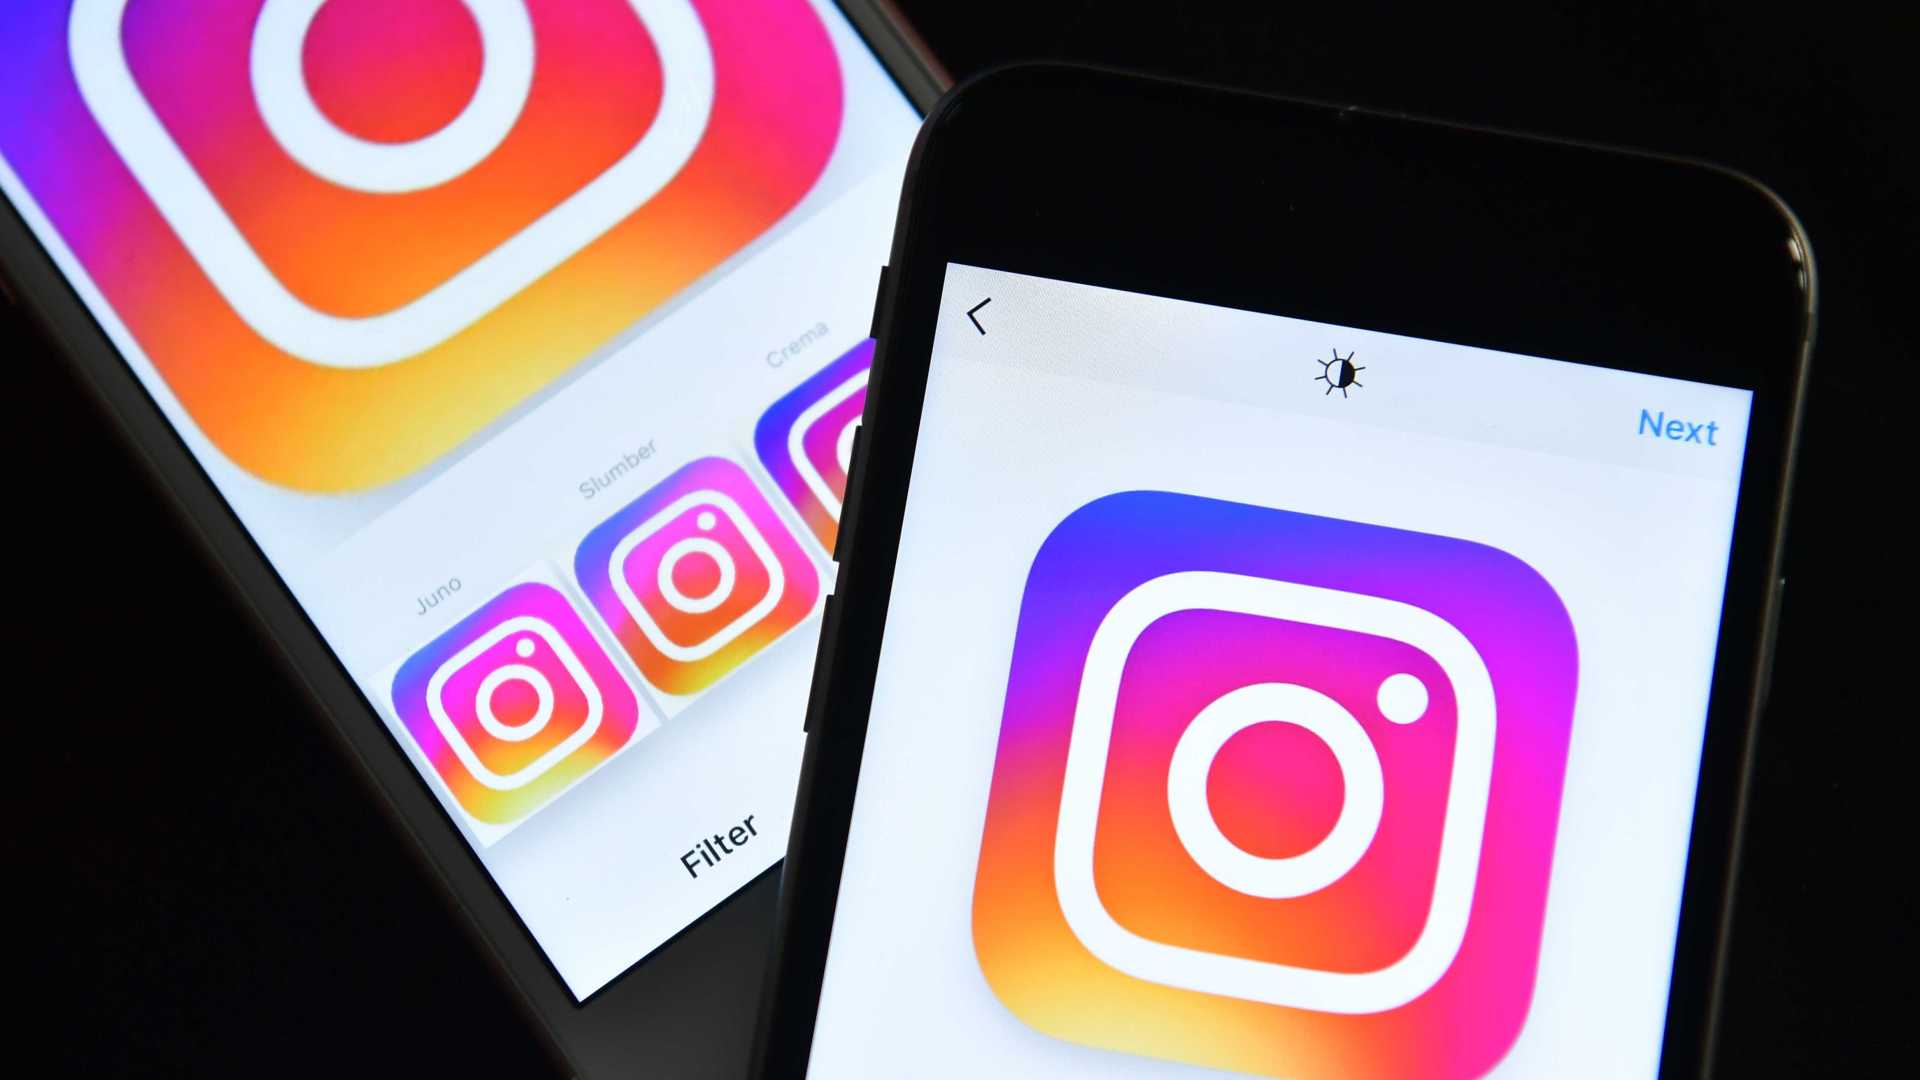 GIFs removidos do Instagram por questão racista